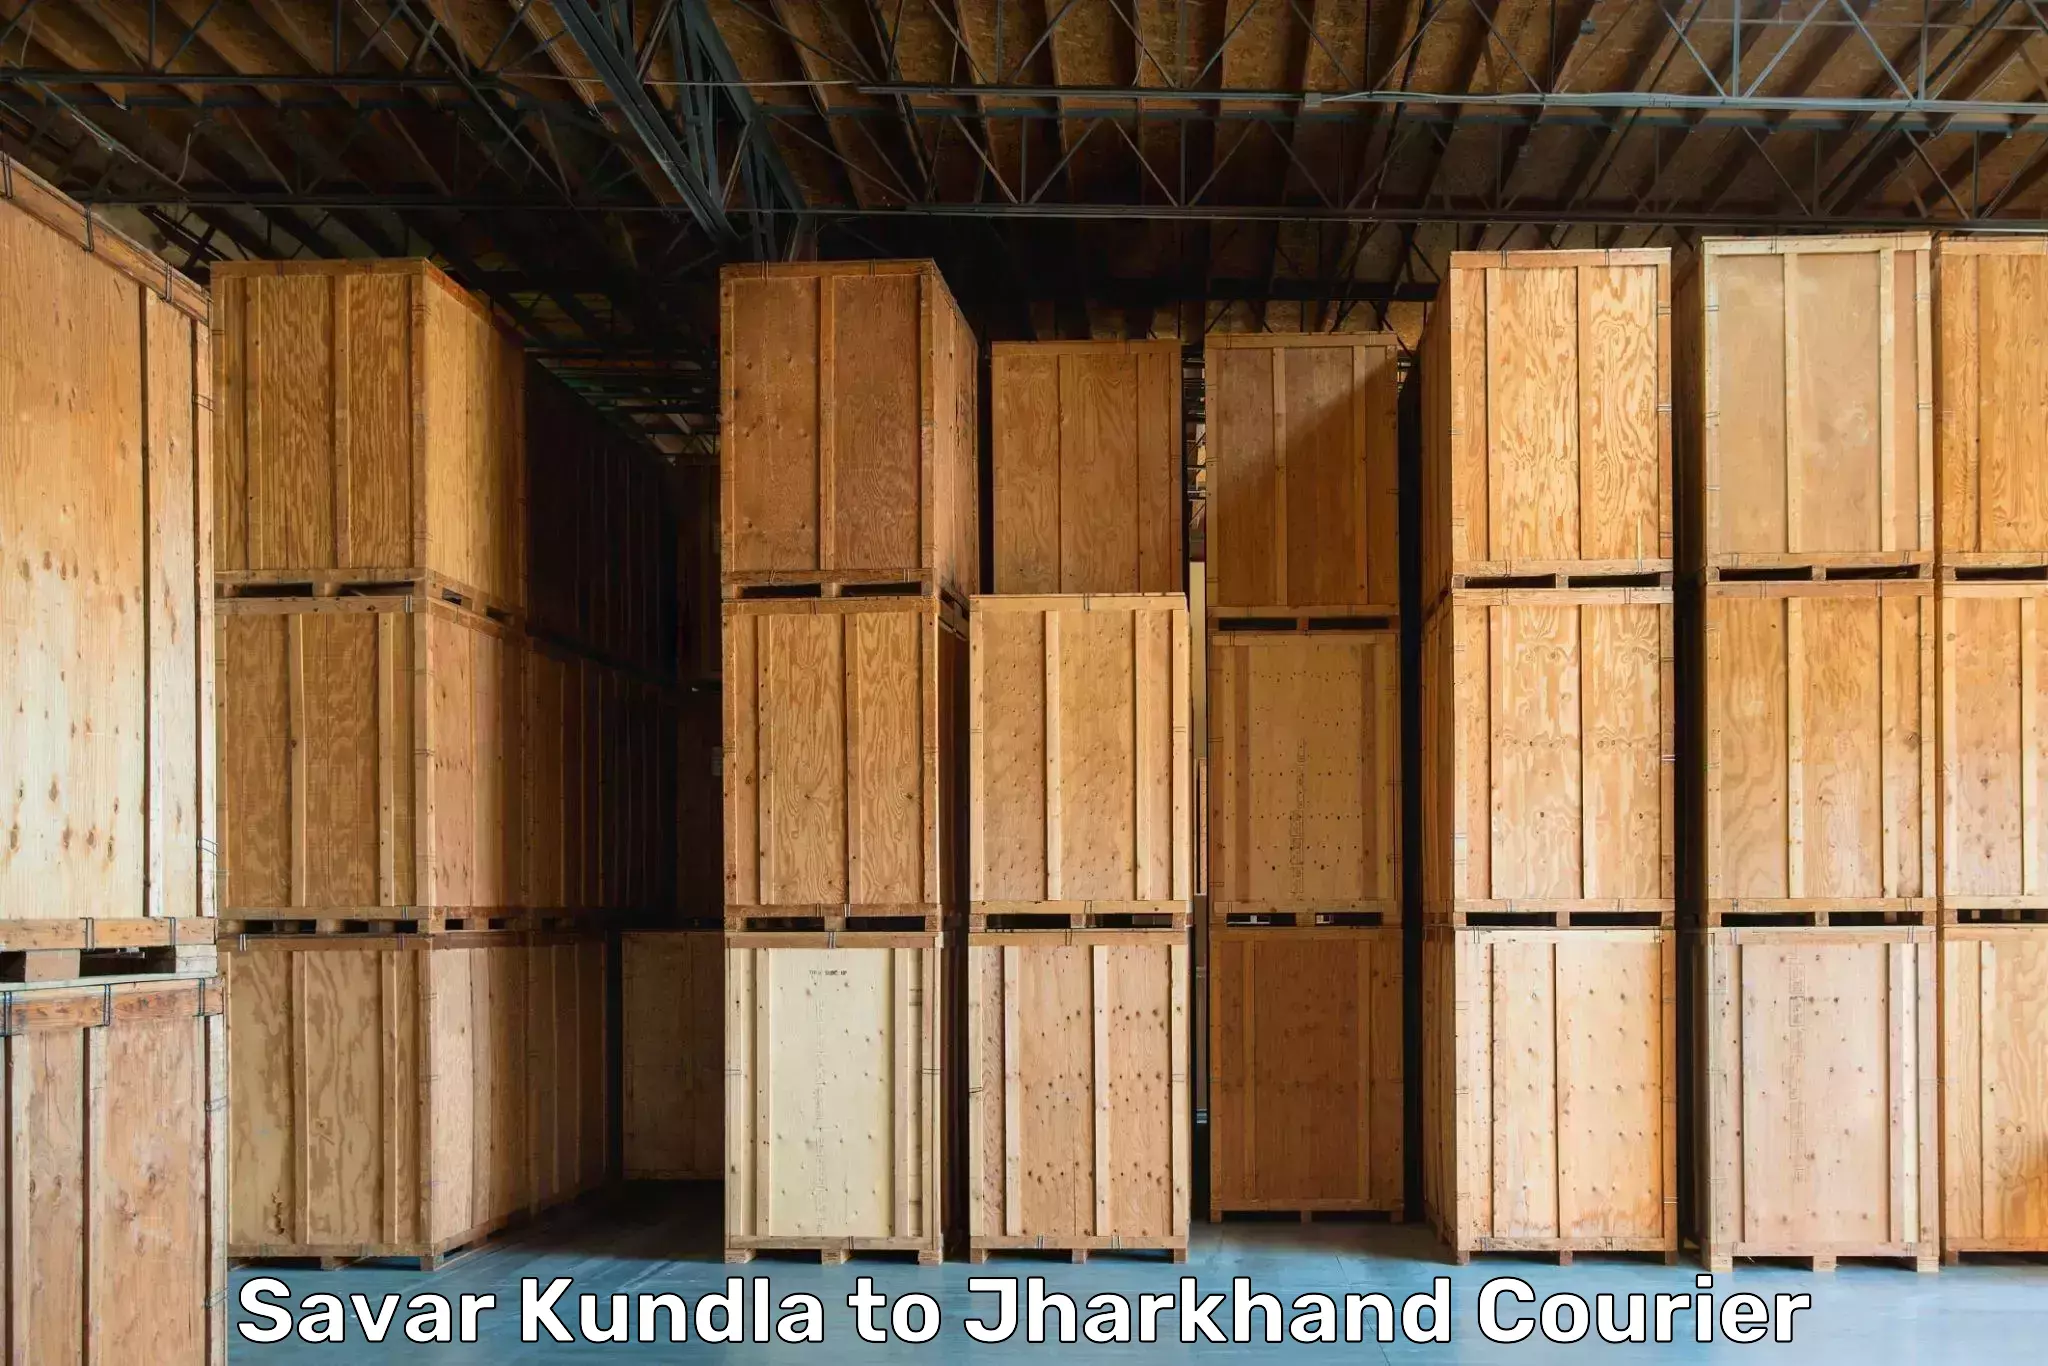 Household moving and handling Savar Kundla to Ranka Garhwa